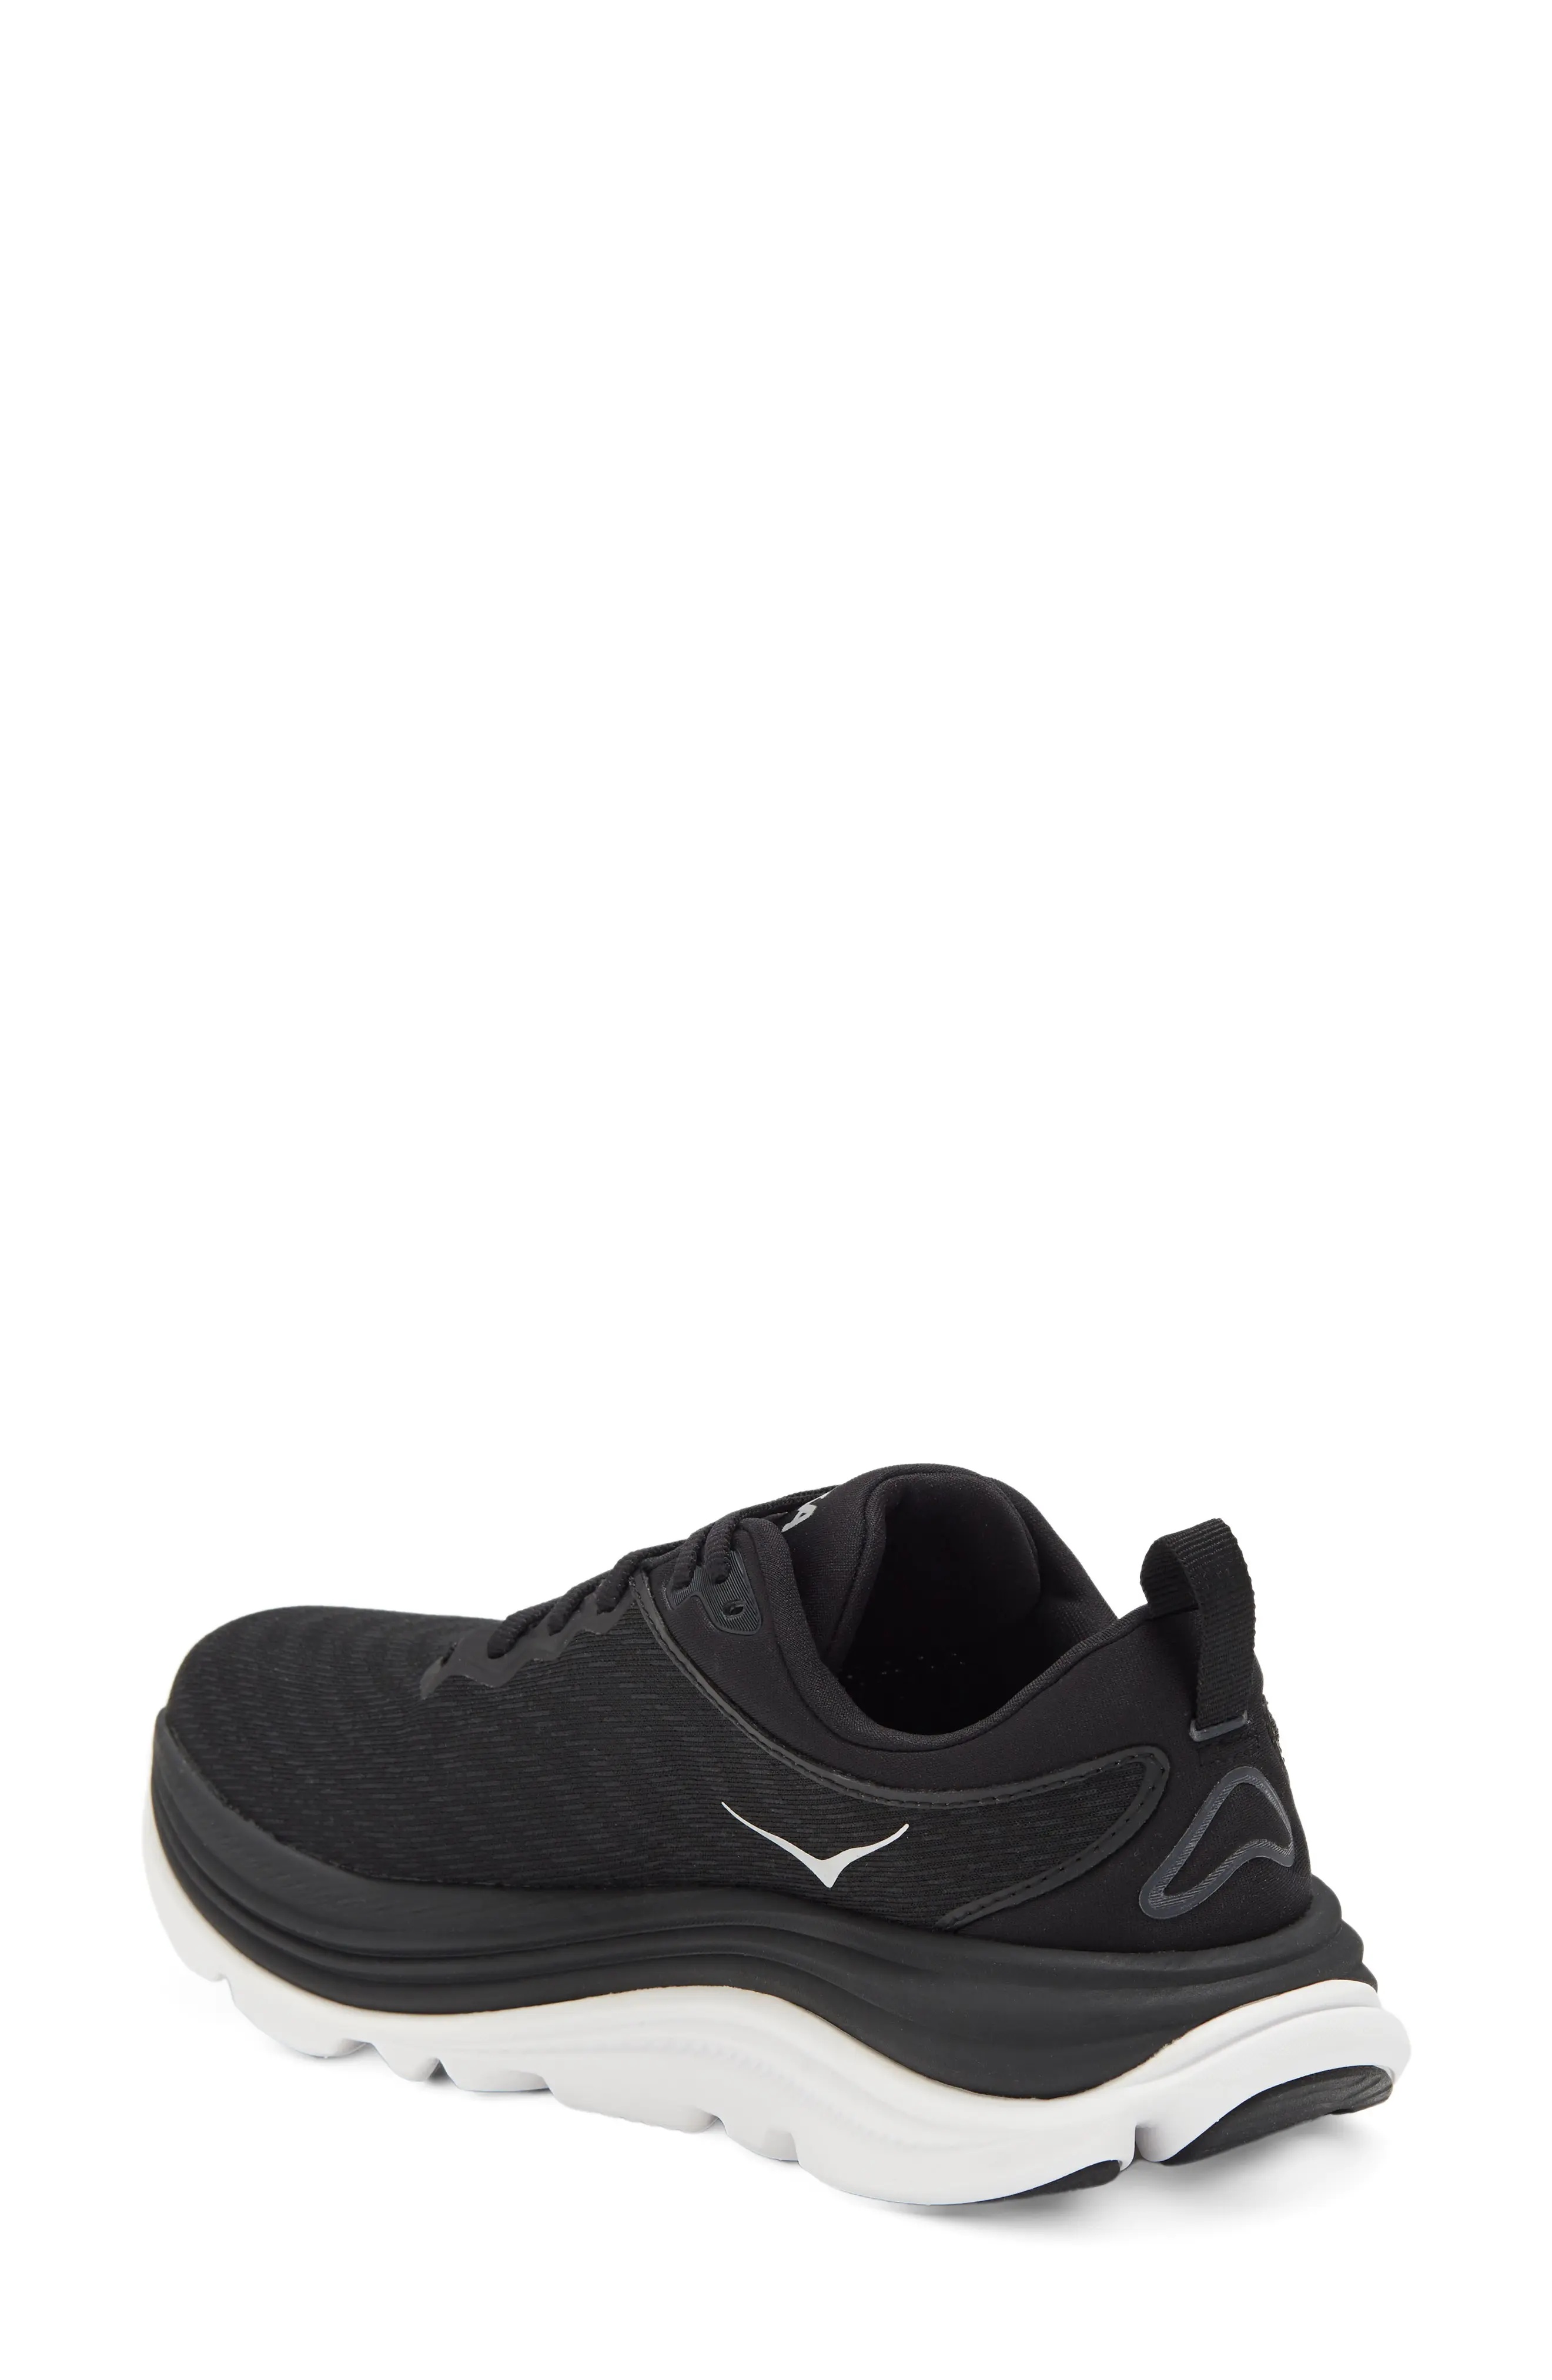 Gaviota 5 Running Shoe in Black /White - 2